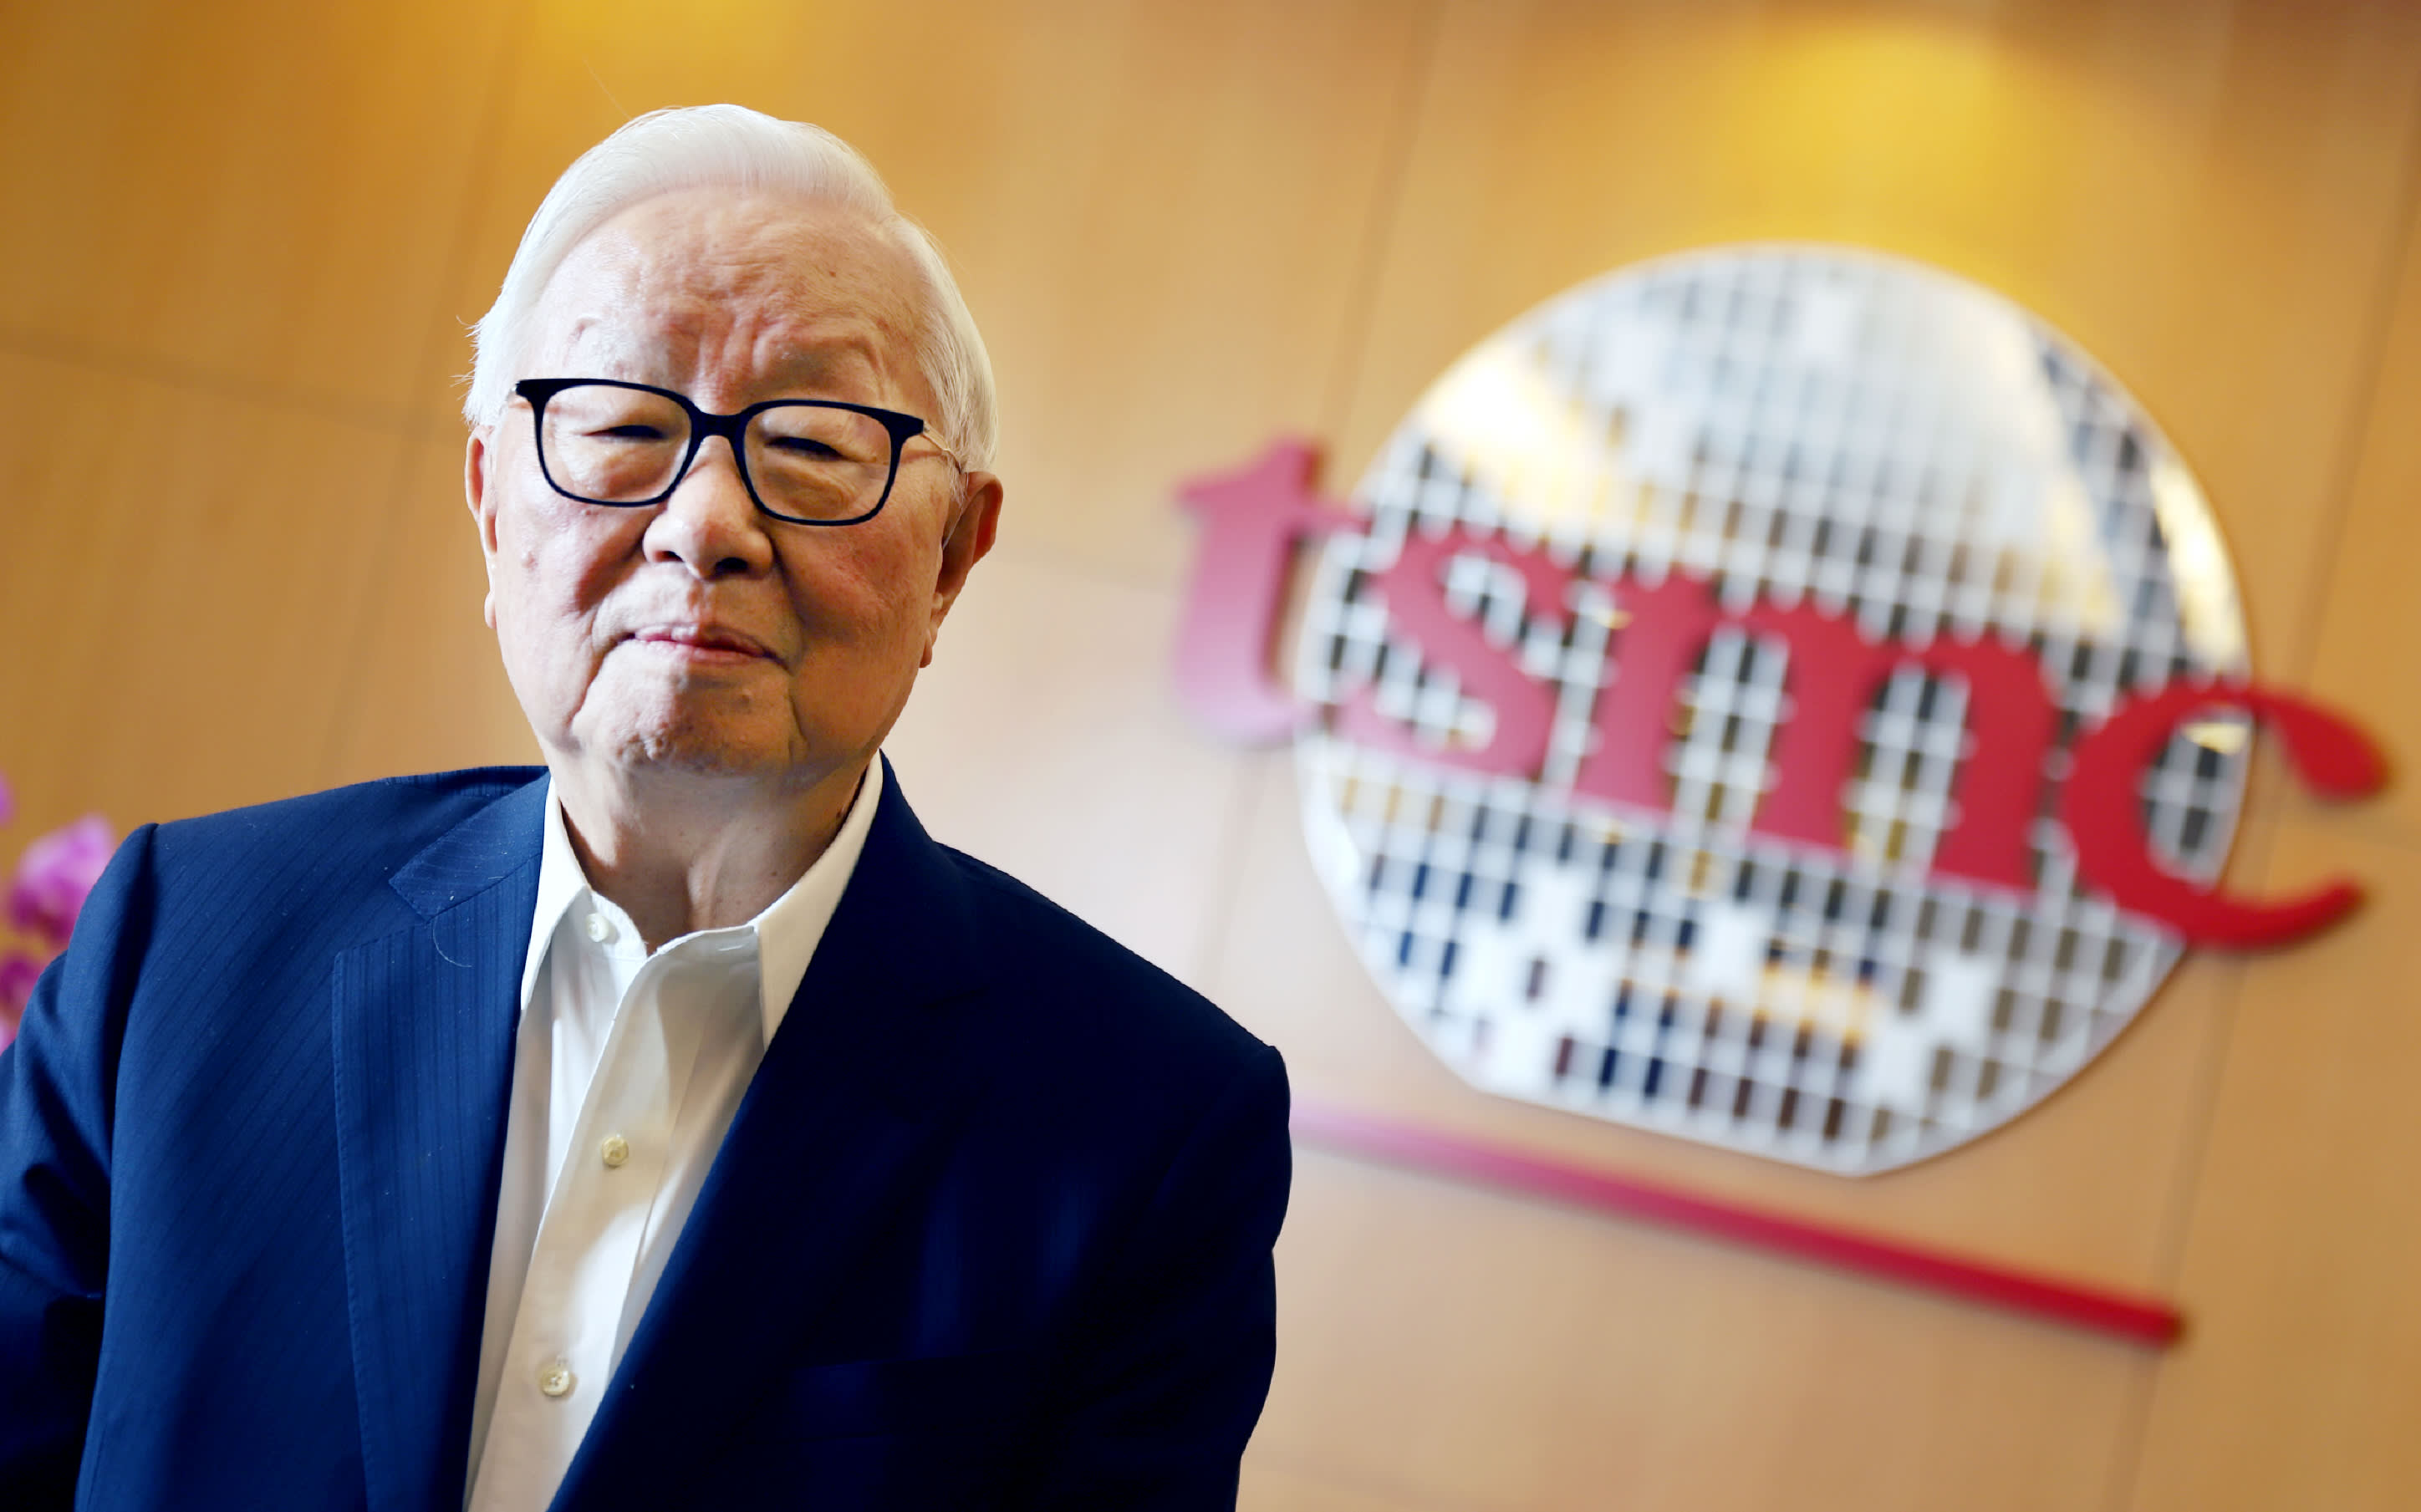 Ông Morris Chang (Trương Chung Mưu), cha đẻ của ngành công nghiệp bán dẫn Đài Loan, người sáng lập công ty TSMC, đã từ bỏ vị trí rất tốt tại Mỹ (Phó chủ tịch Tập đoàn Texas Instrument) để trở về quê hương đóng góp theo lời kêu gọi của chính quyền Tưởng Kinh Quốc hồi những năm 1980. 